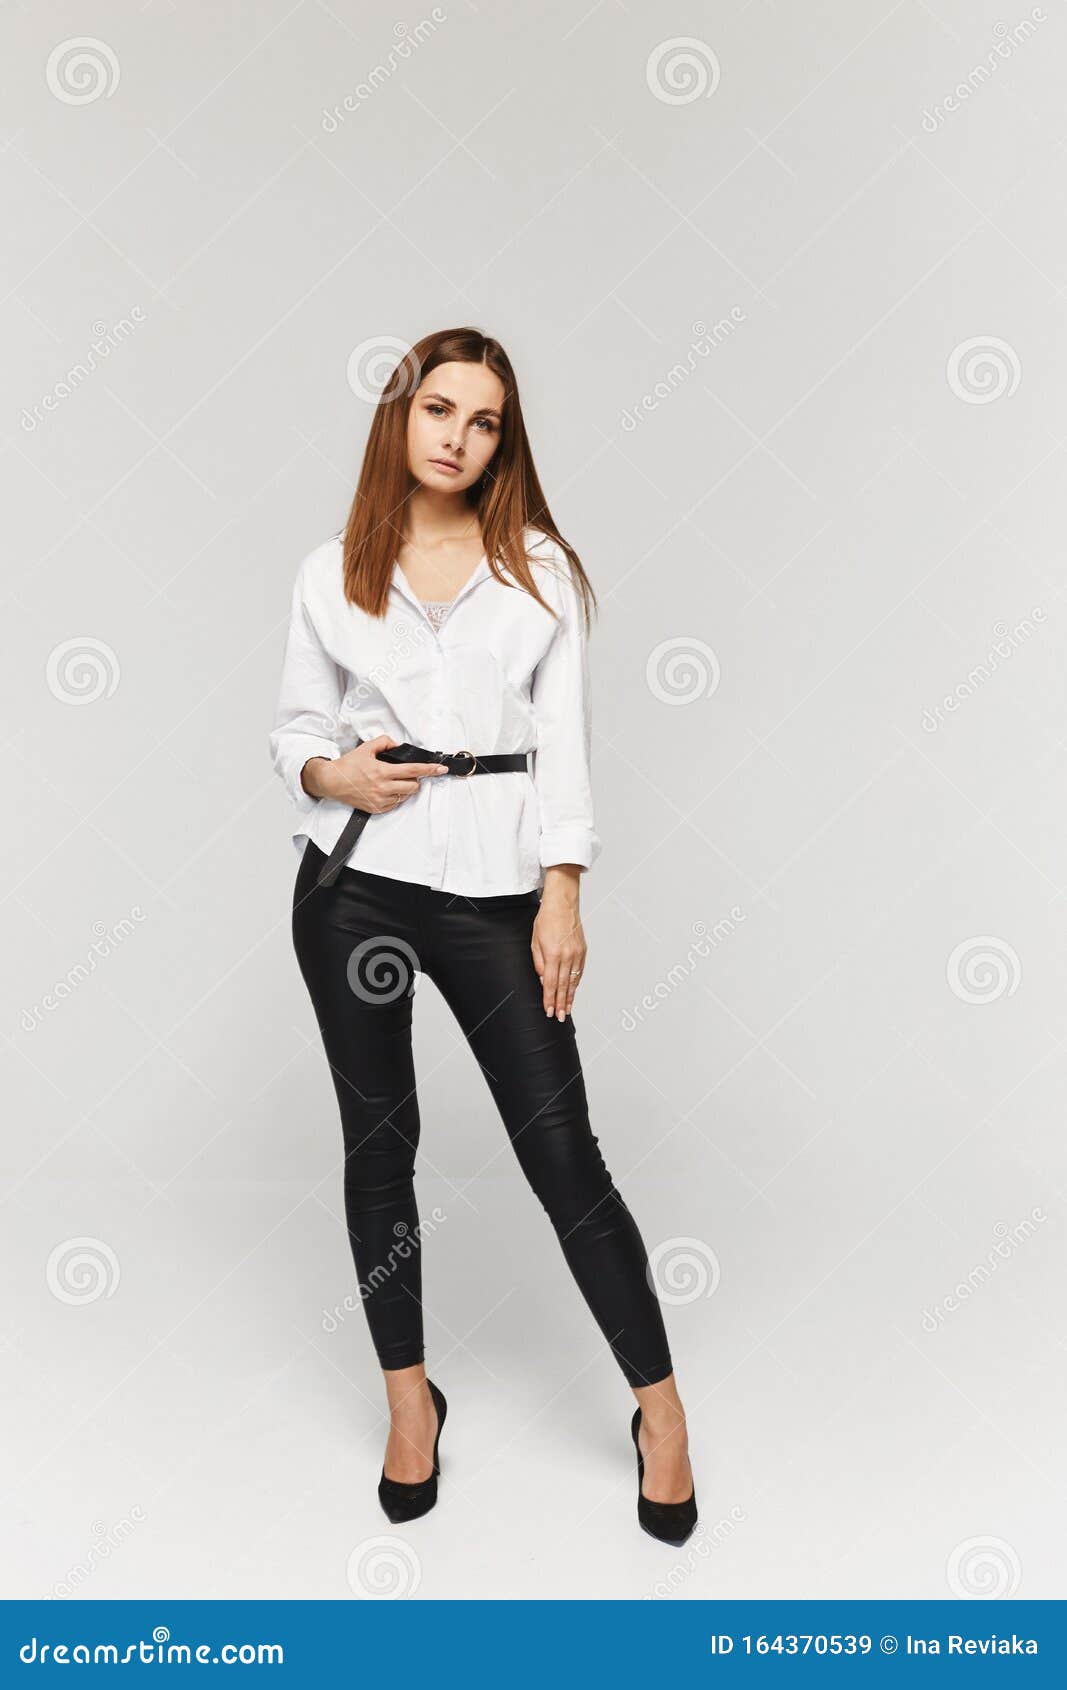 Retrato De Mujer Joven Con Camisa Blanca Y Aislados De Fondo Blanco Empresaria Elegante Imagen de archivo - Imagen de brillante, persona: 164370539